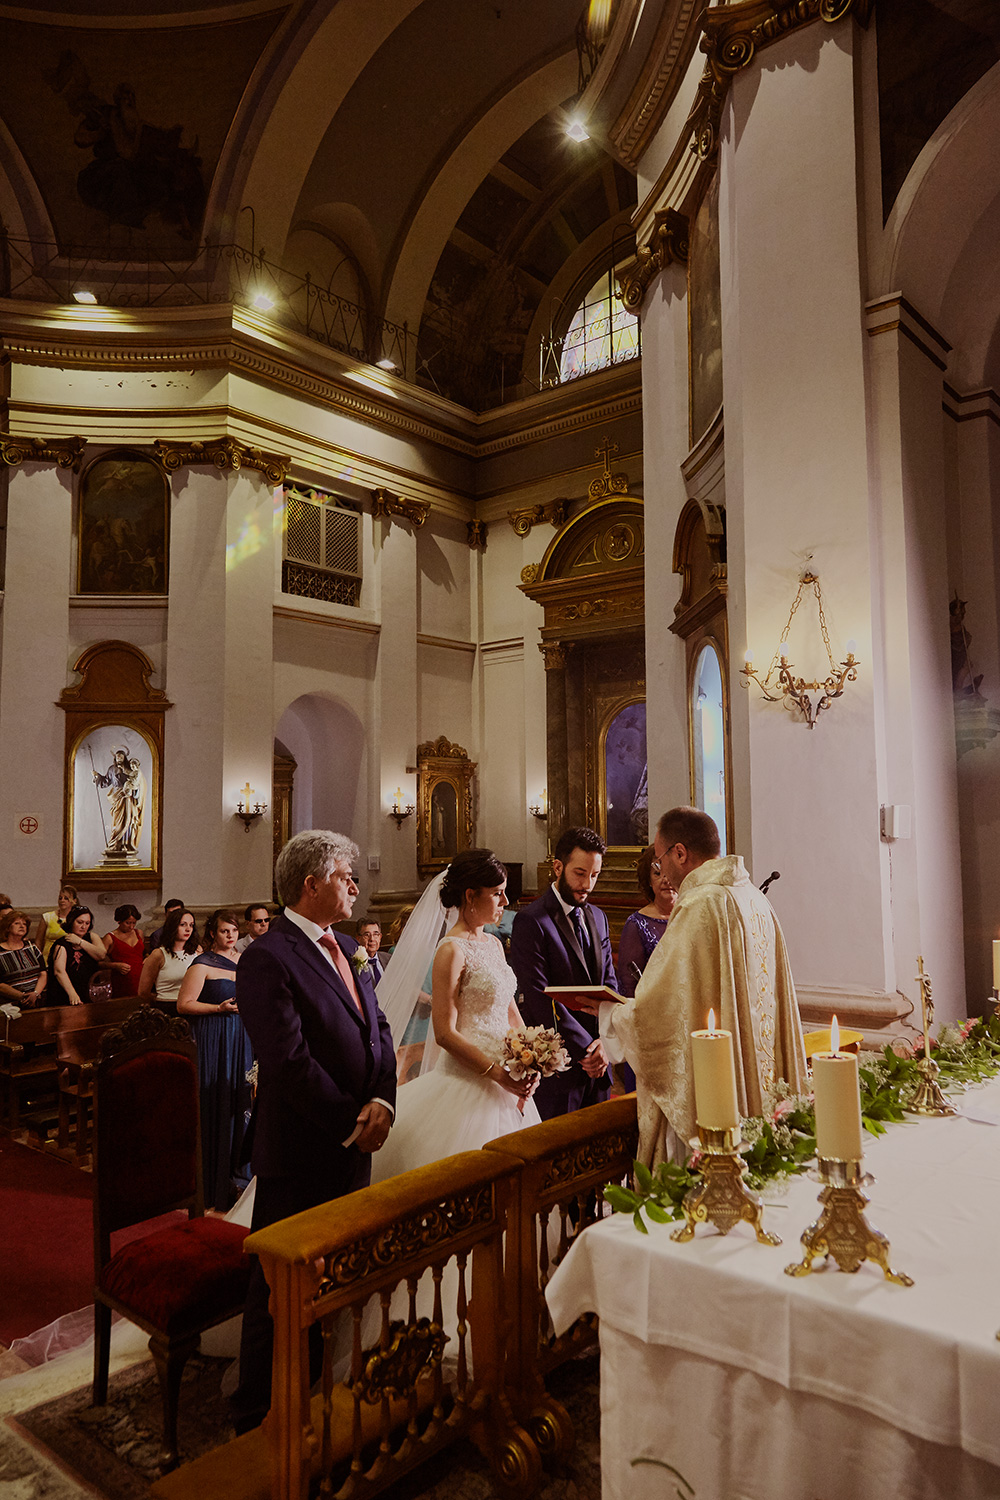 Fotos de boda exclusivos y originales en Madrid